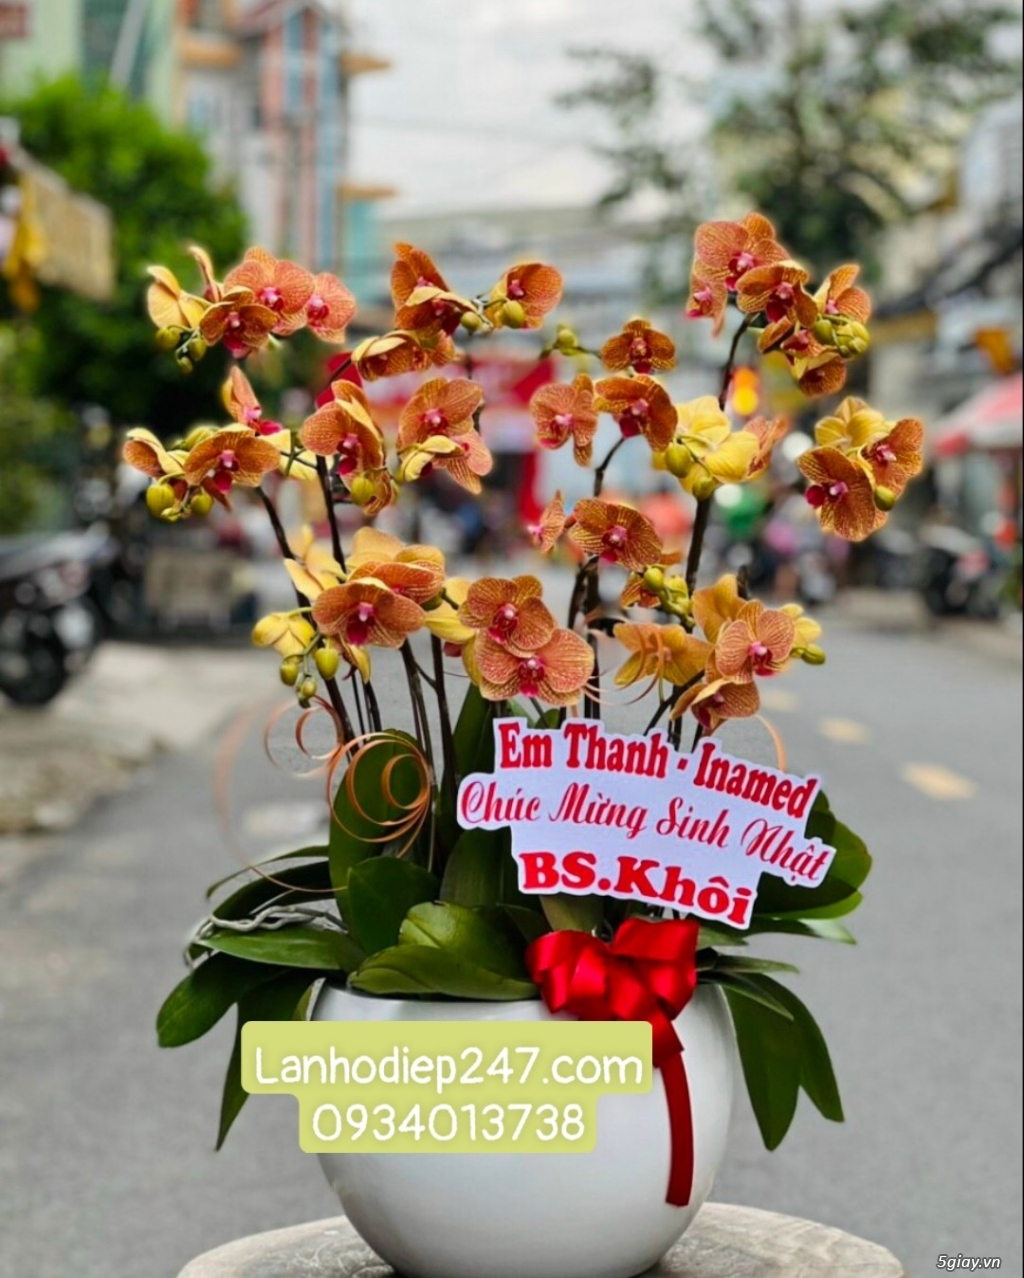 Hoa Tươi 247 Sài Gòn là dịch vụ hoa tươi số 1 TPHCM chuyên Lan Hồ Điệp - 5